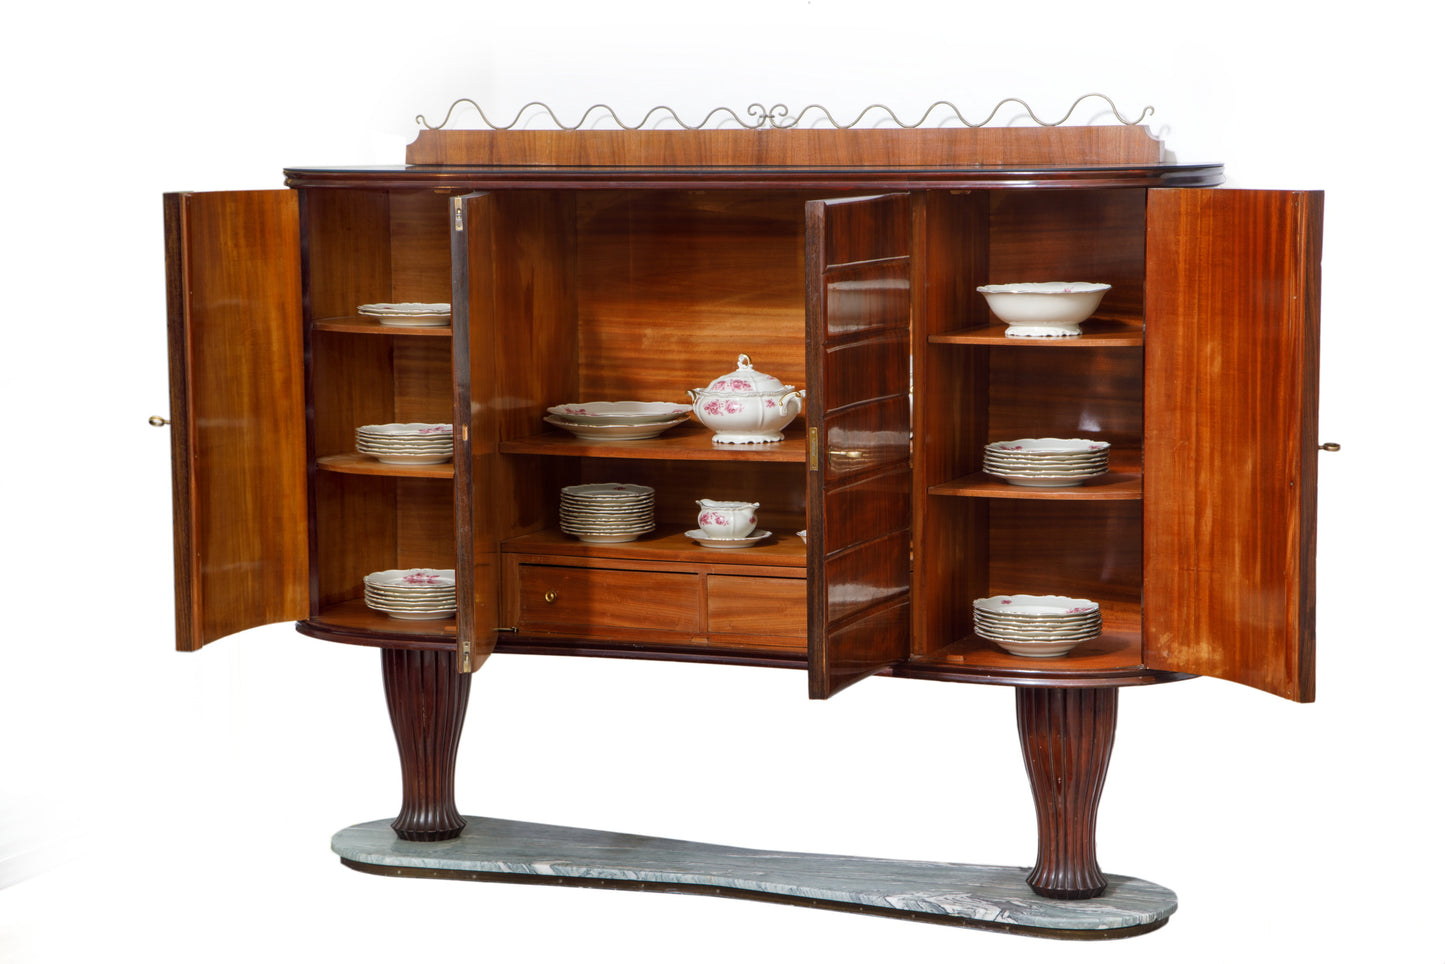 Vittorio Dassi furniture from the 1950s